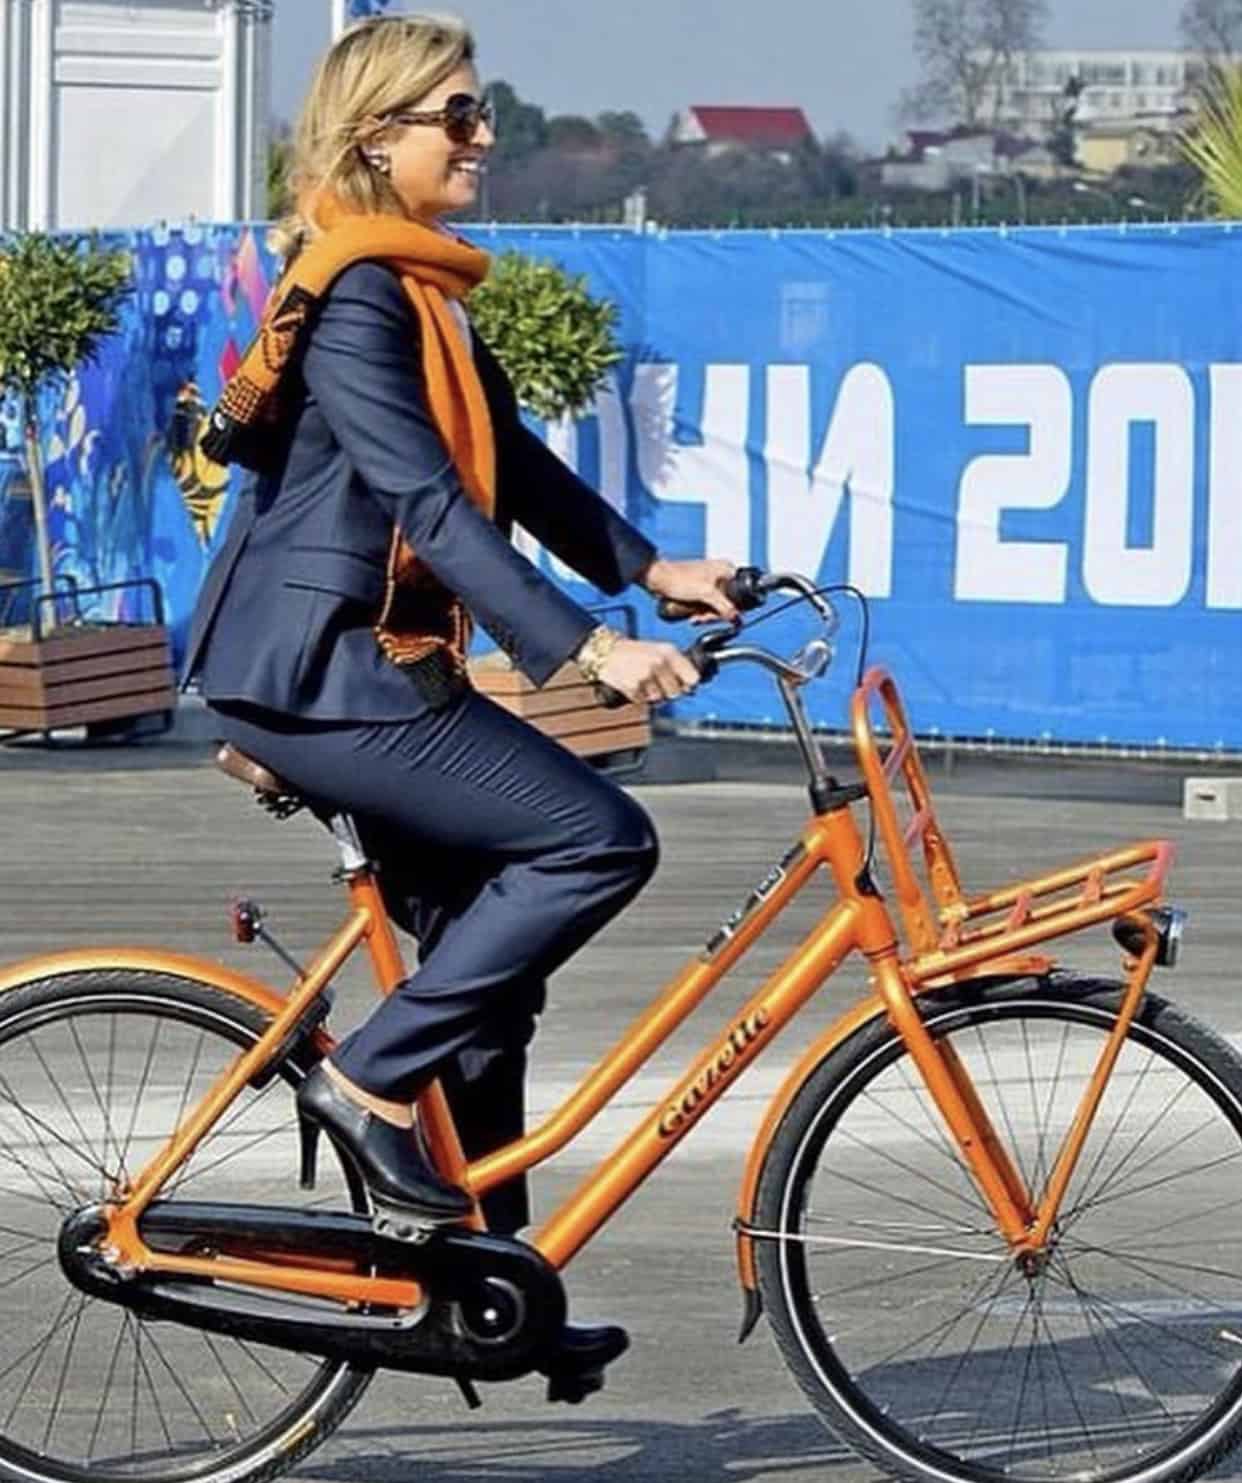 พระราชินีแม็กซิม่ากับจักรยาน